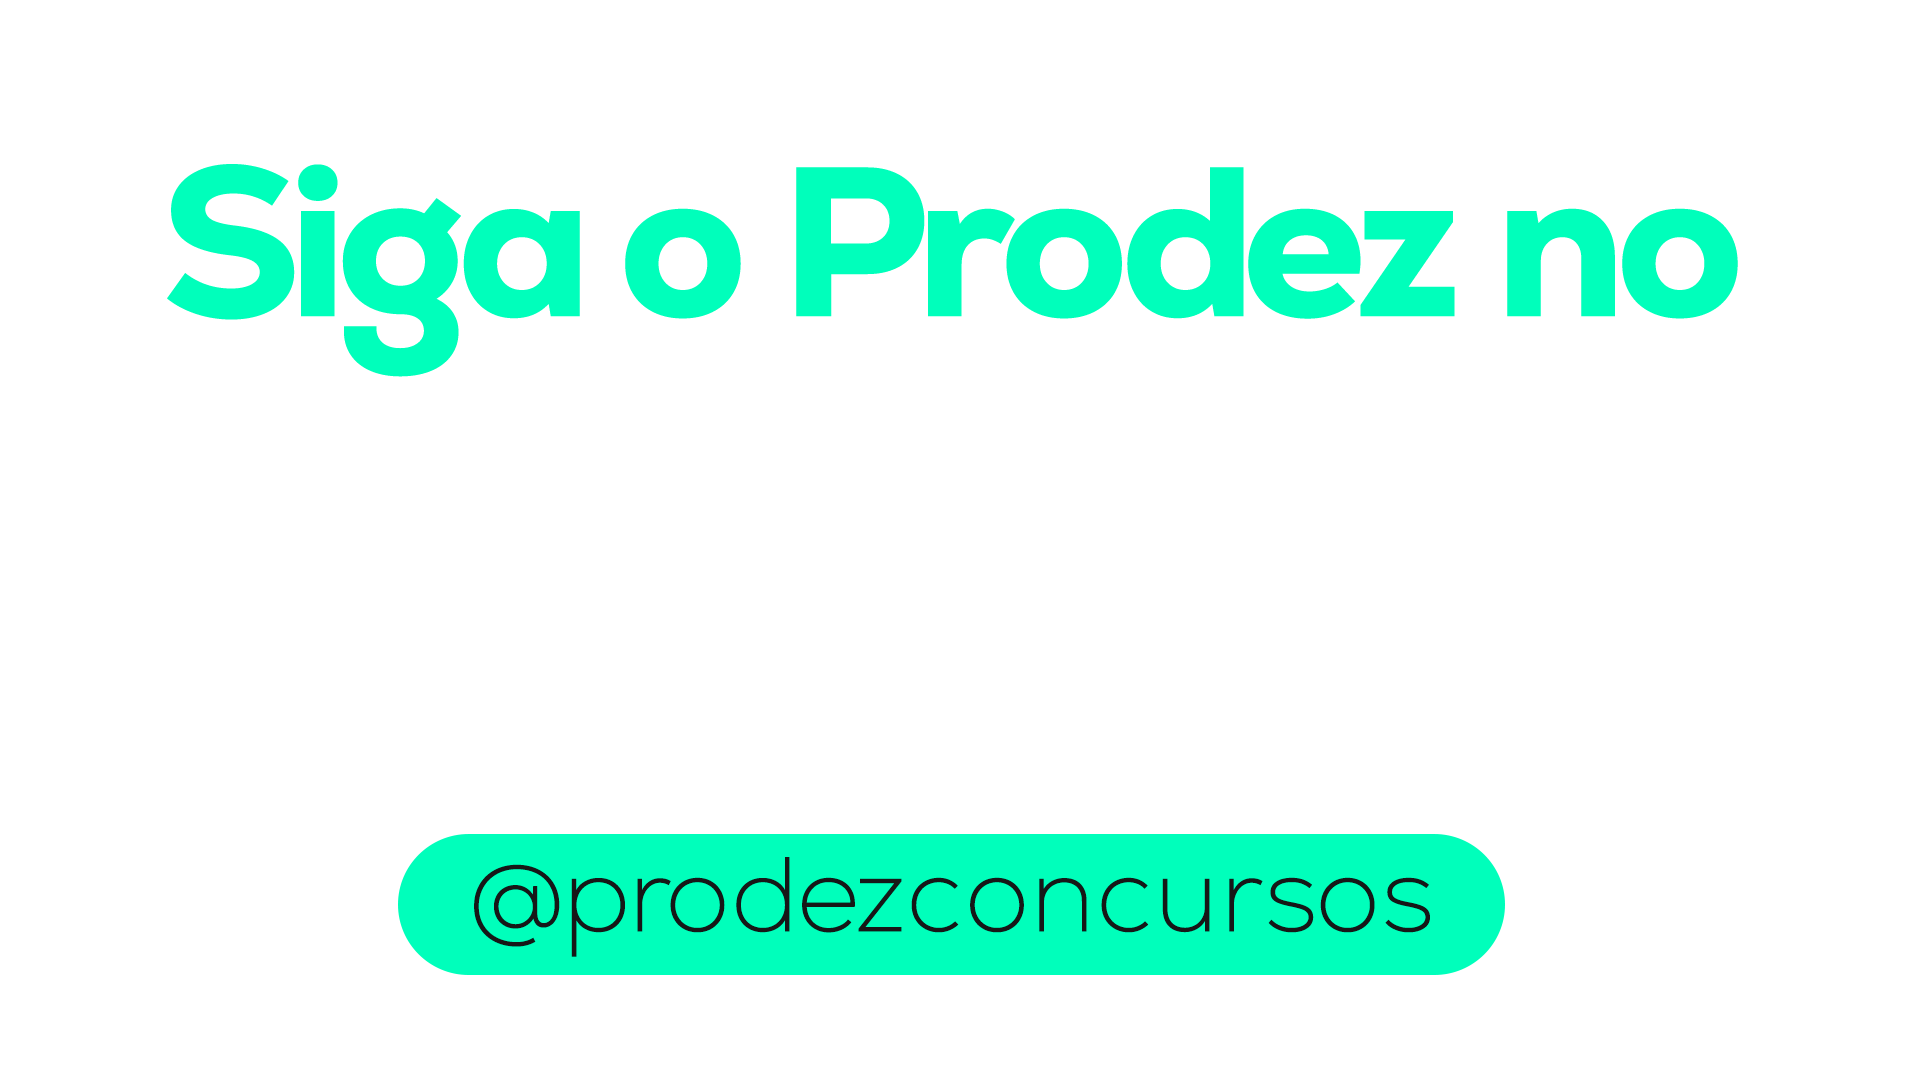 Siga o Prodez no Instagram